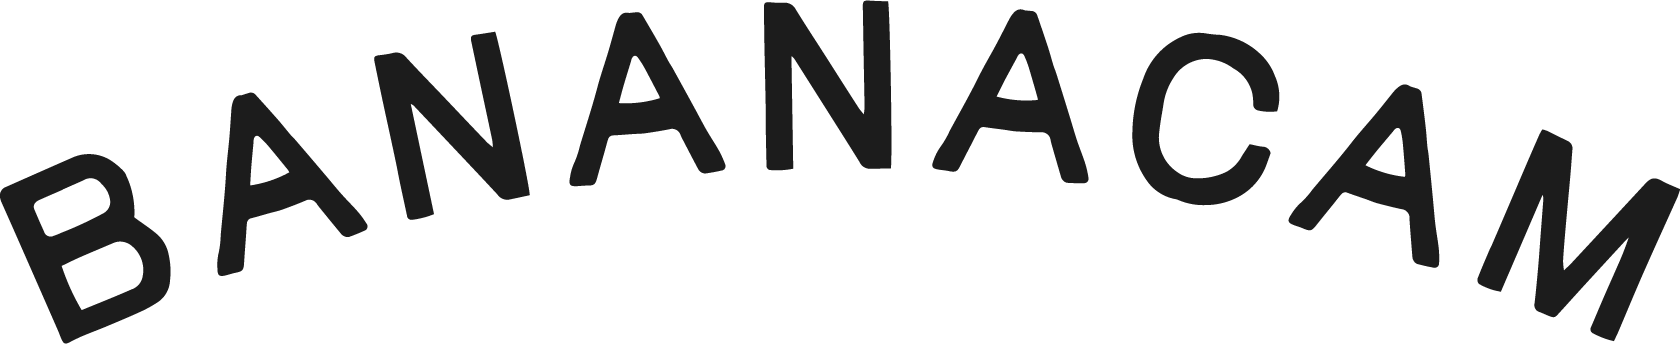 Bananacam logo